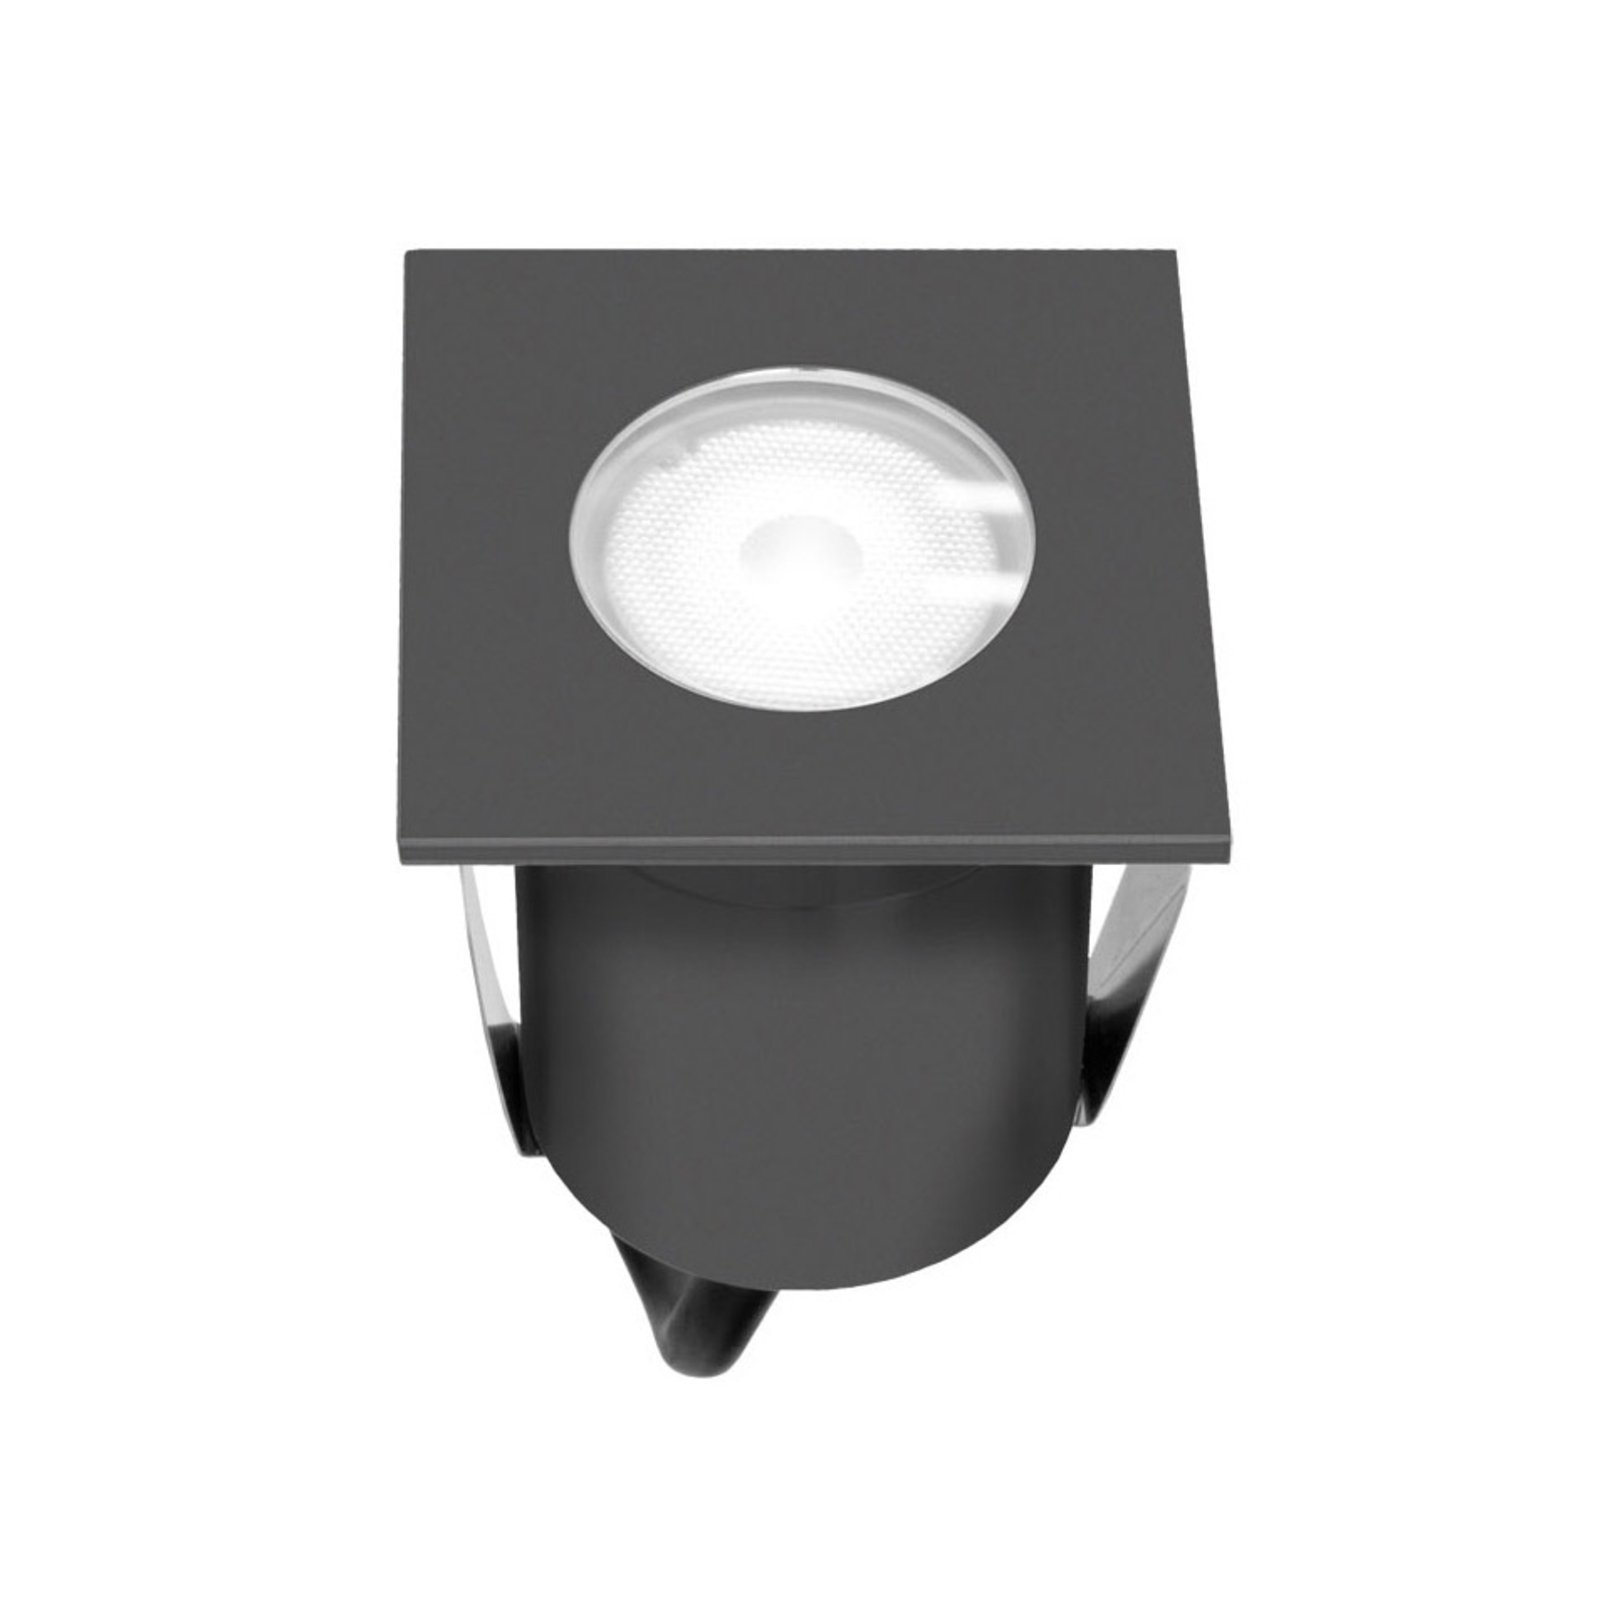 EVN 654120A lampe encastrable LED, 220-240 V